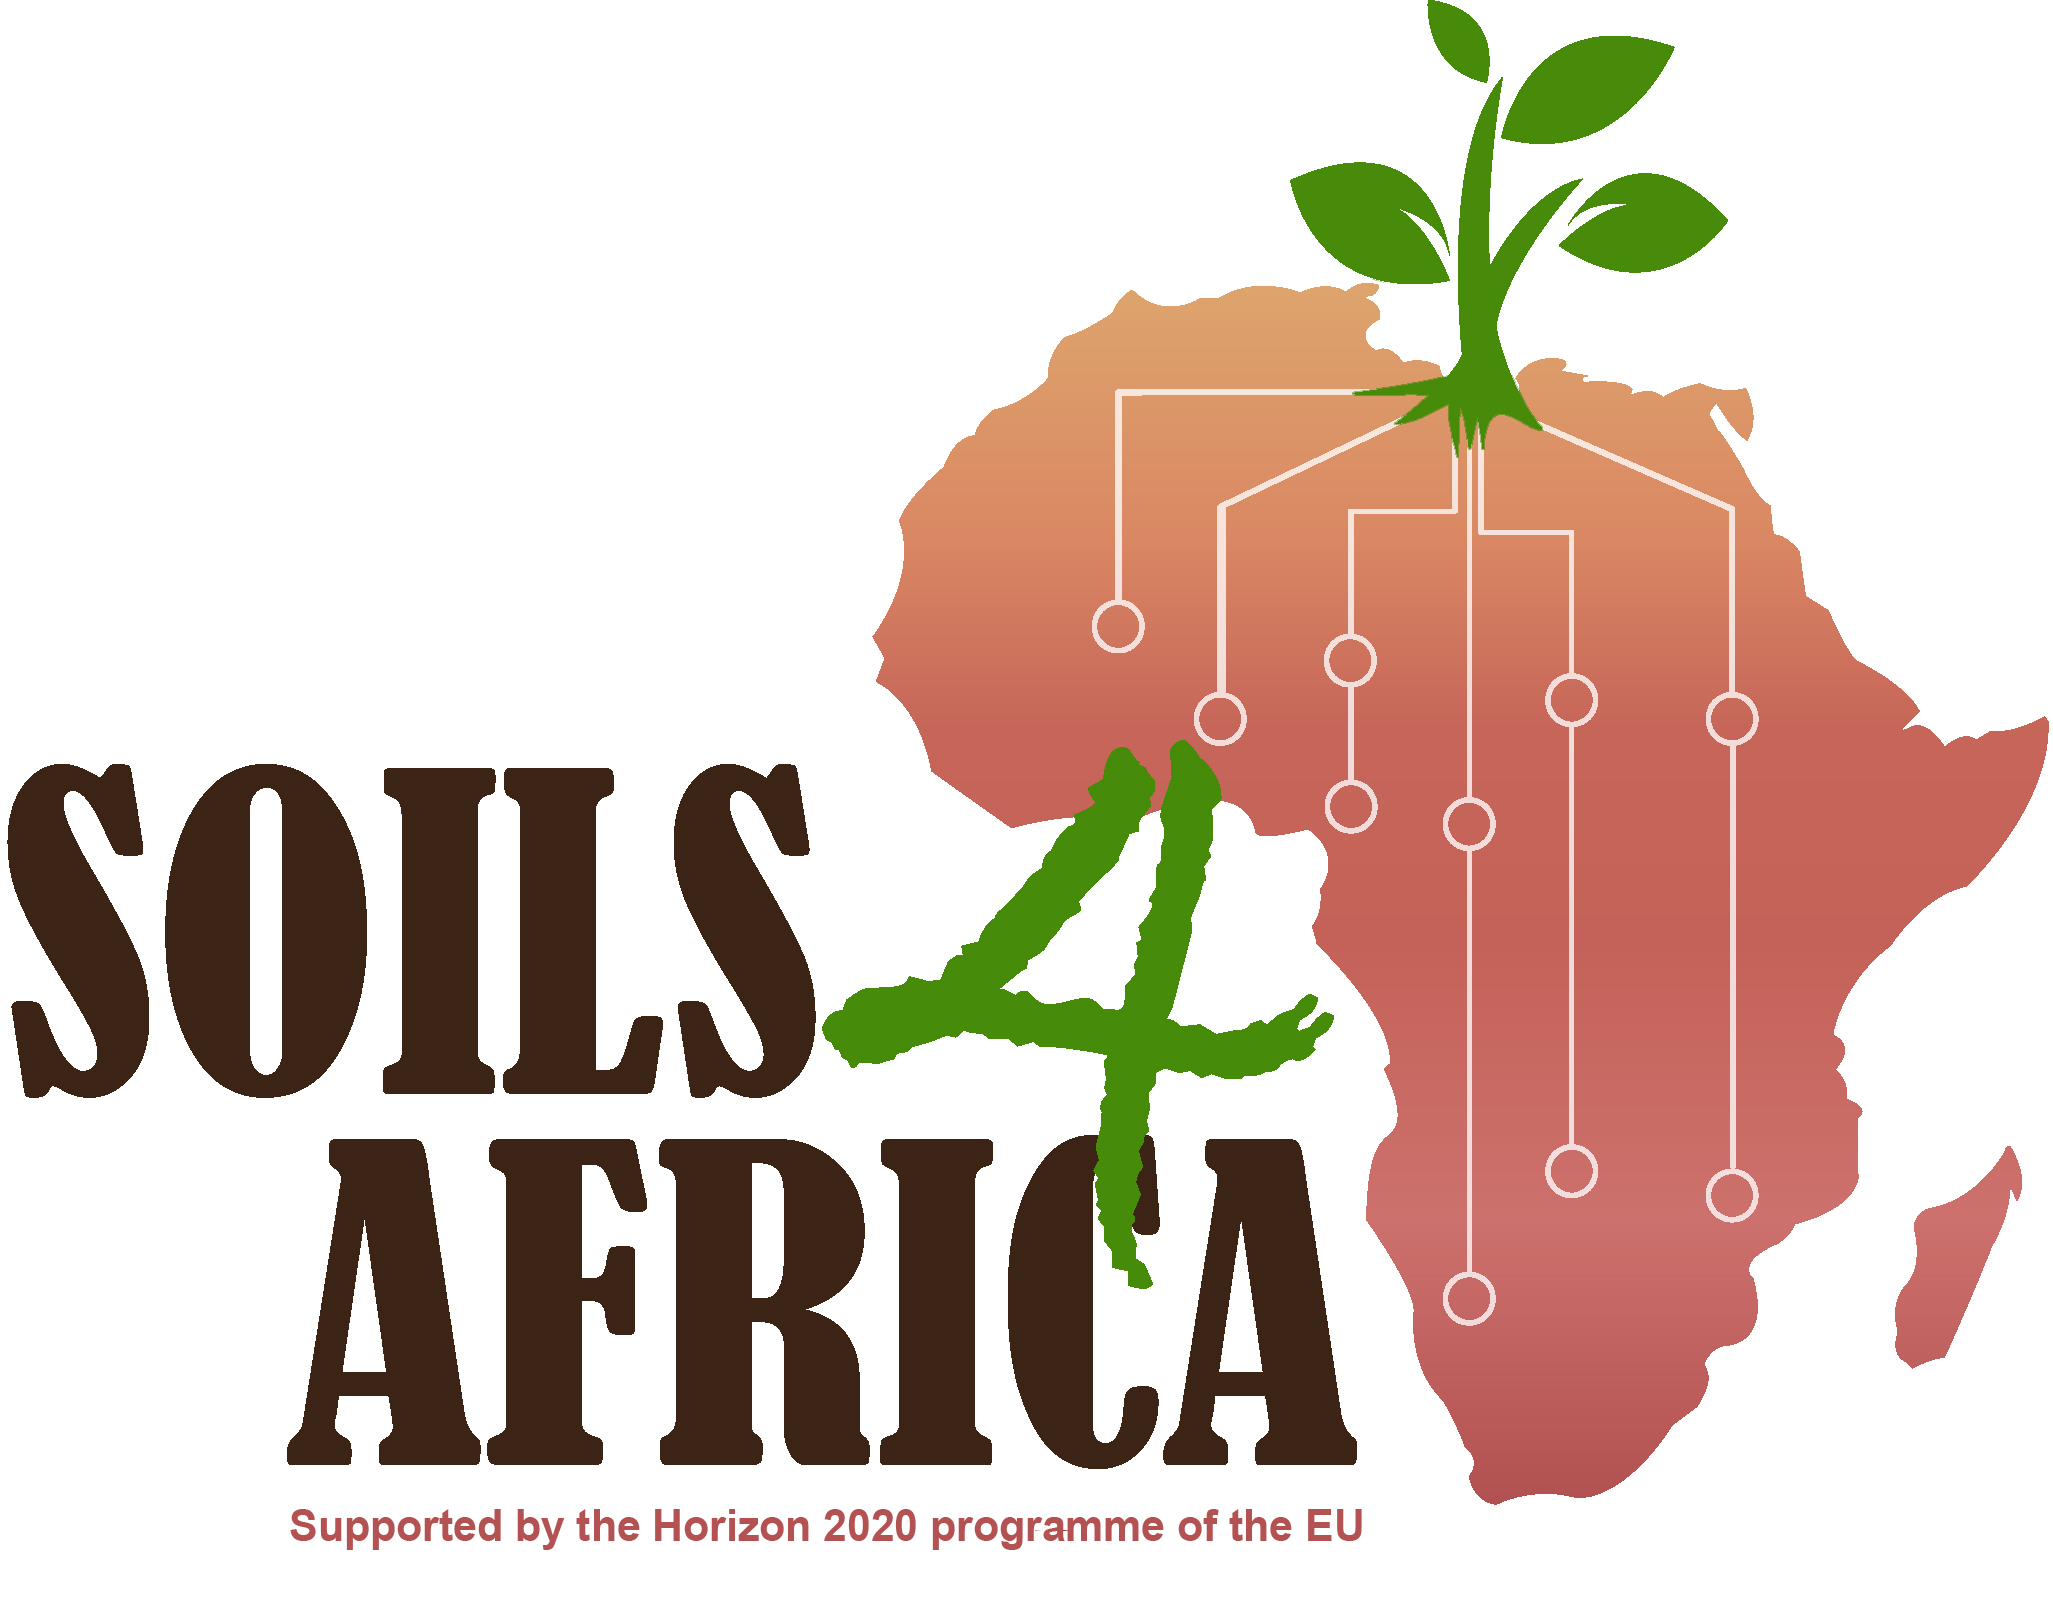 "Soils for Africa"